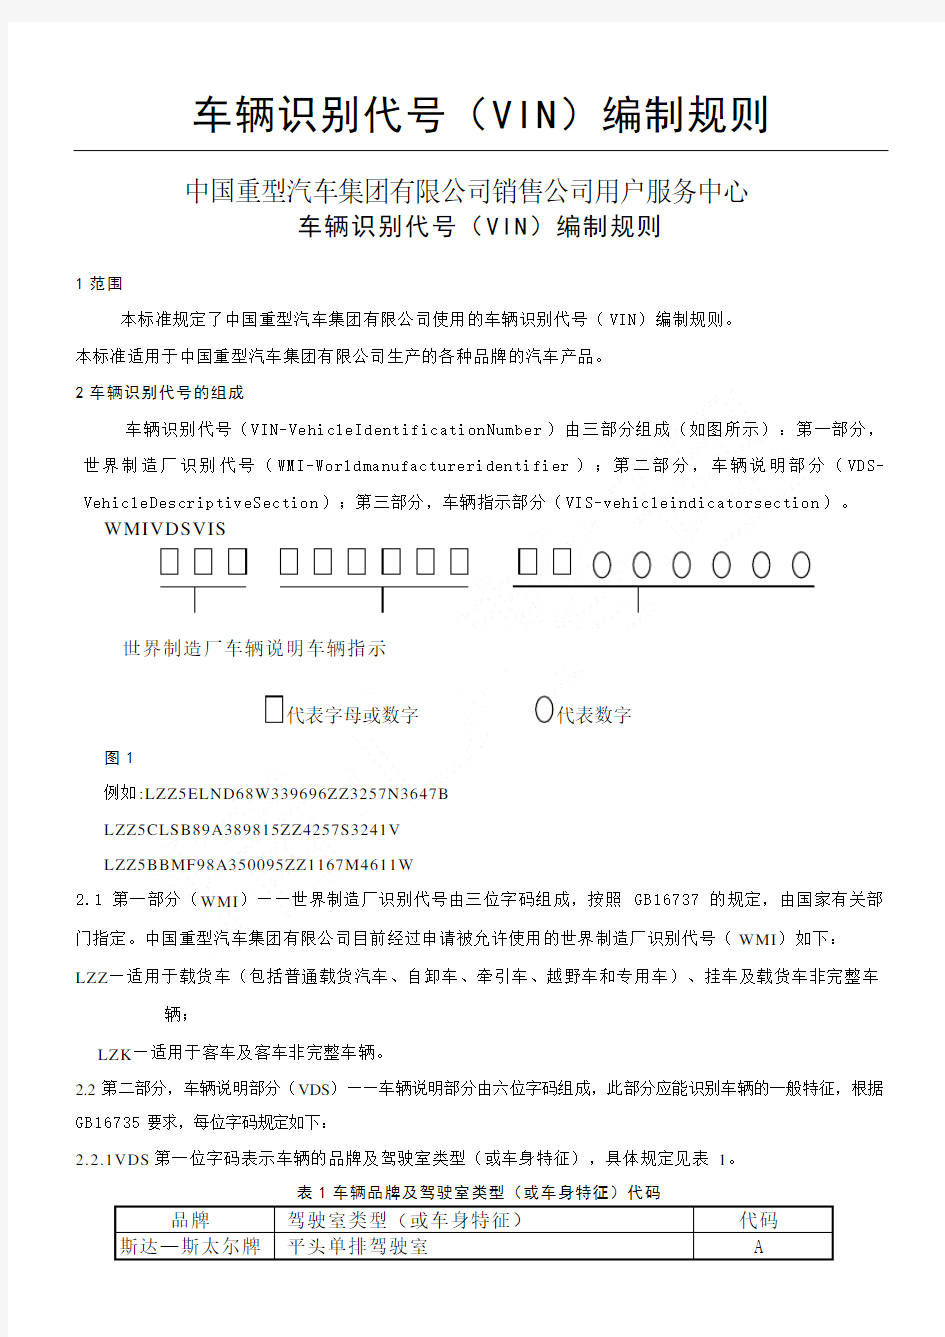 中国重汽车辆识别代号(VIN)编制规则